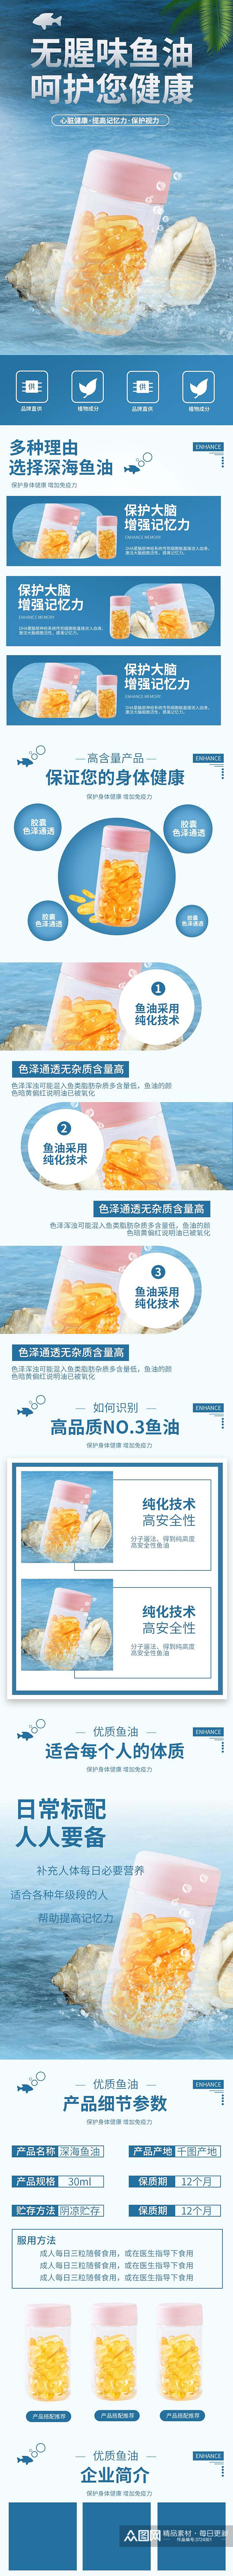 为腥味鱼油食品宣传电商详情页素材